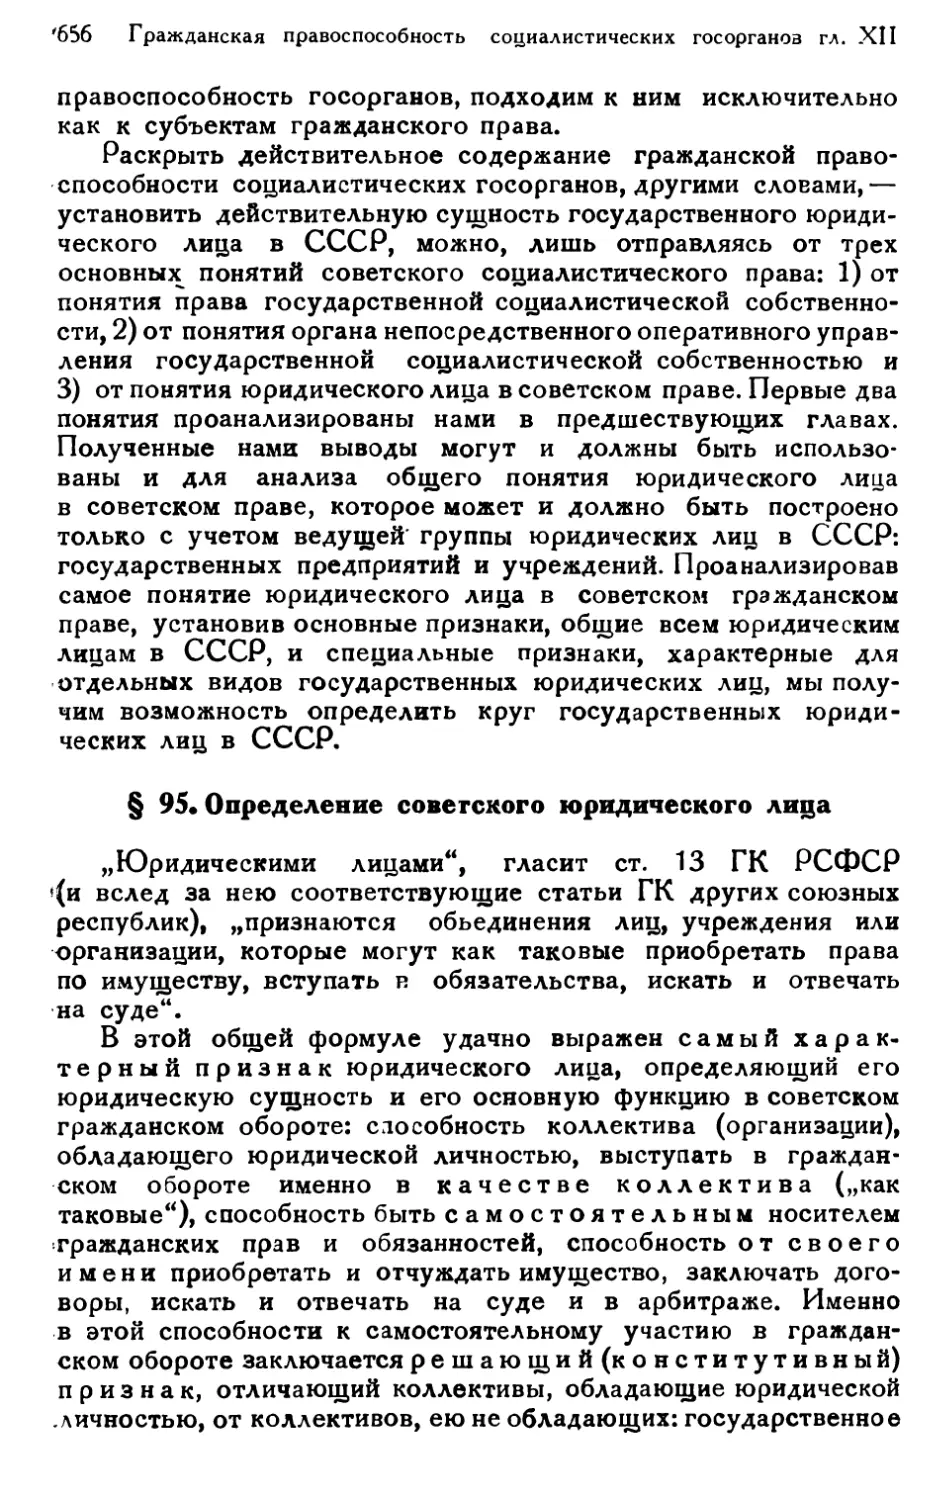 § 95. Определение советского юридического лица